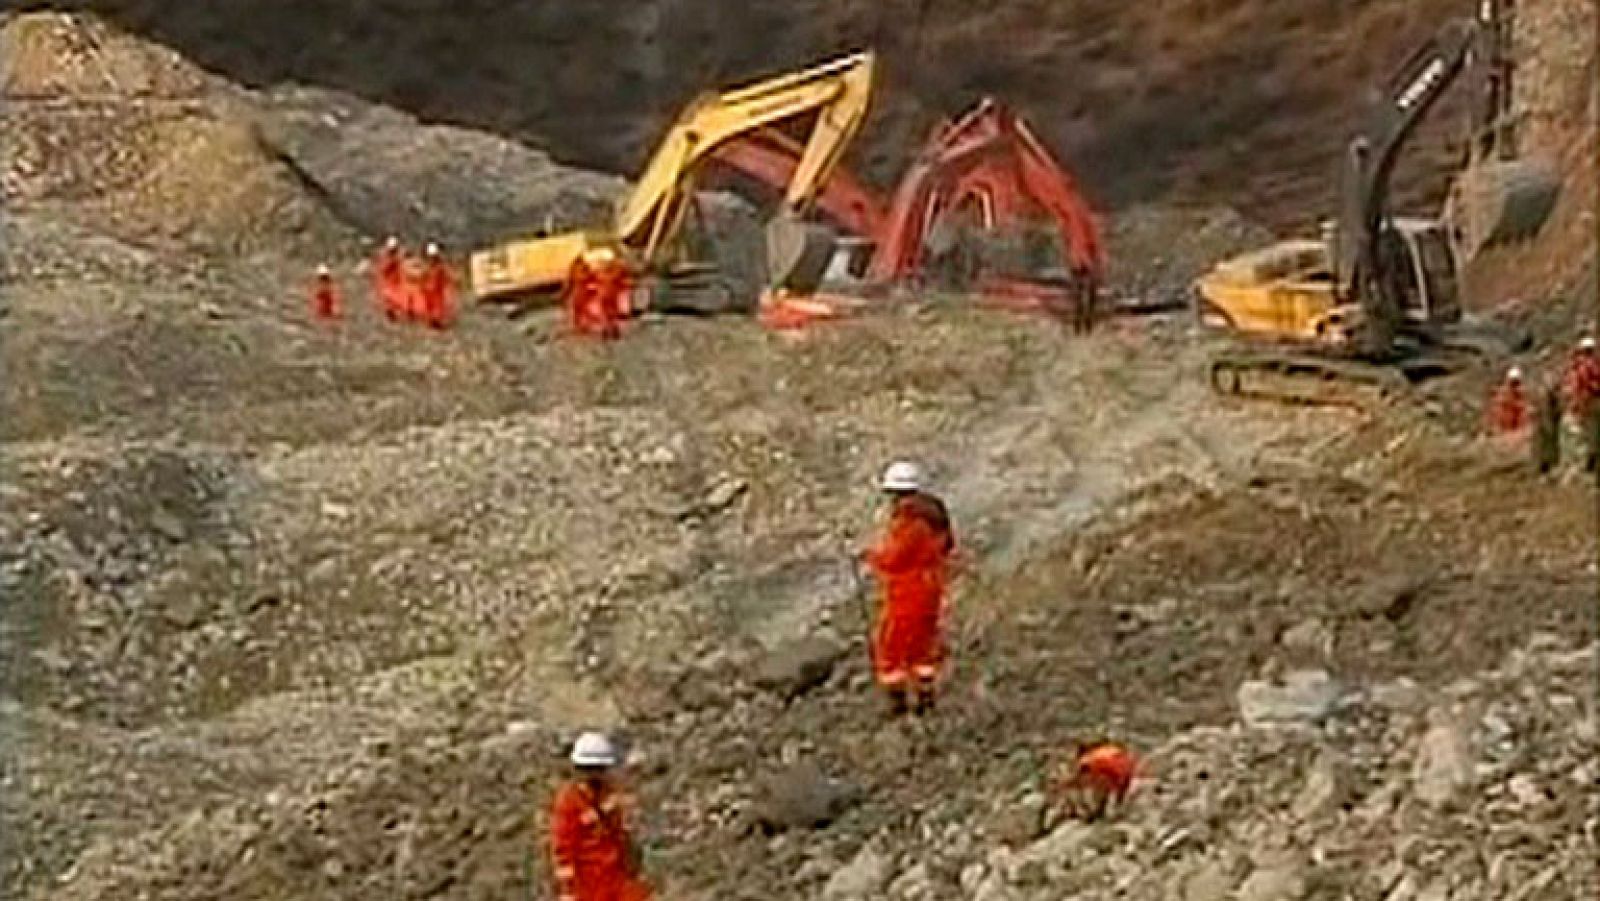 Un total de 28 personas han fallecido y otras 13 han resultado heridas en una explosión de gas ocurrida en el interior de una mina de carbón en la provincia de Jilin (noreste), según han informado las autoridades locales chinas a través de la agencia Xinhua. Por otro lado, 83 trabajadores han quedado sepultados en un corrimiento de tierras en otra mina en Tíbet.